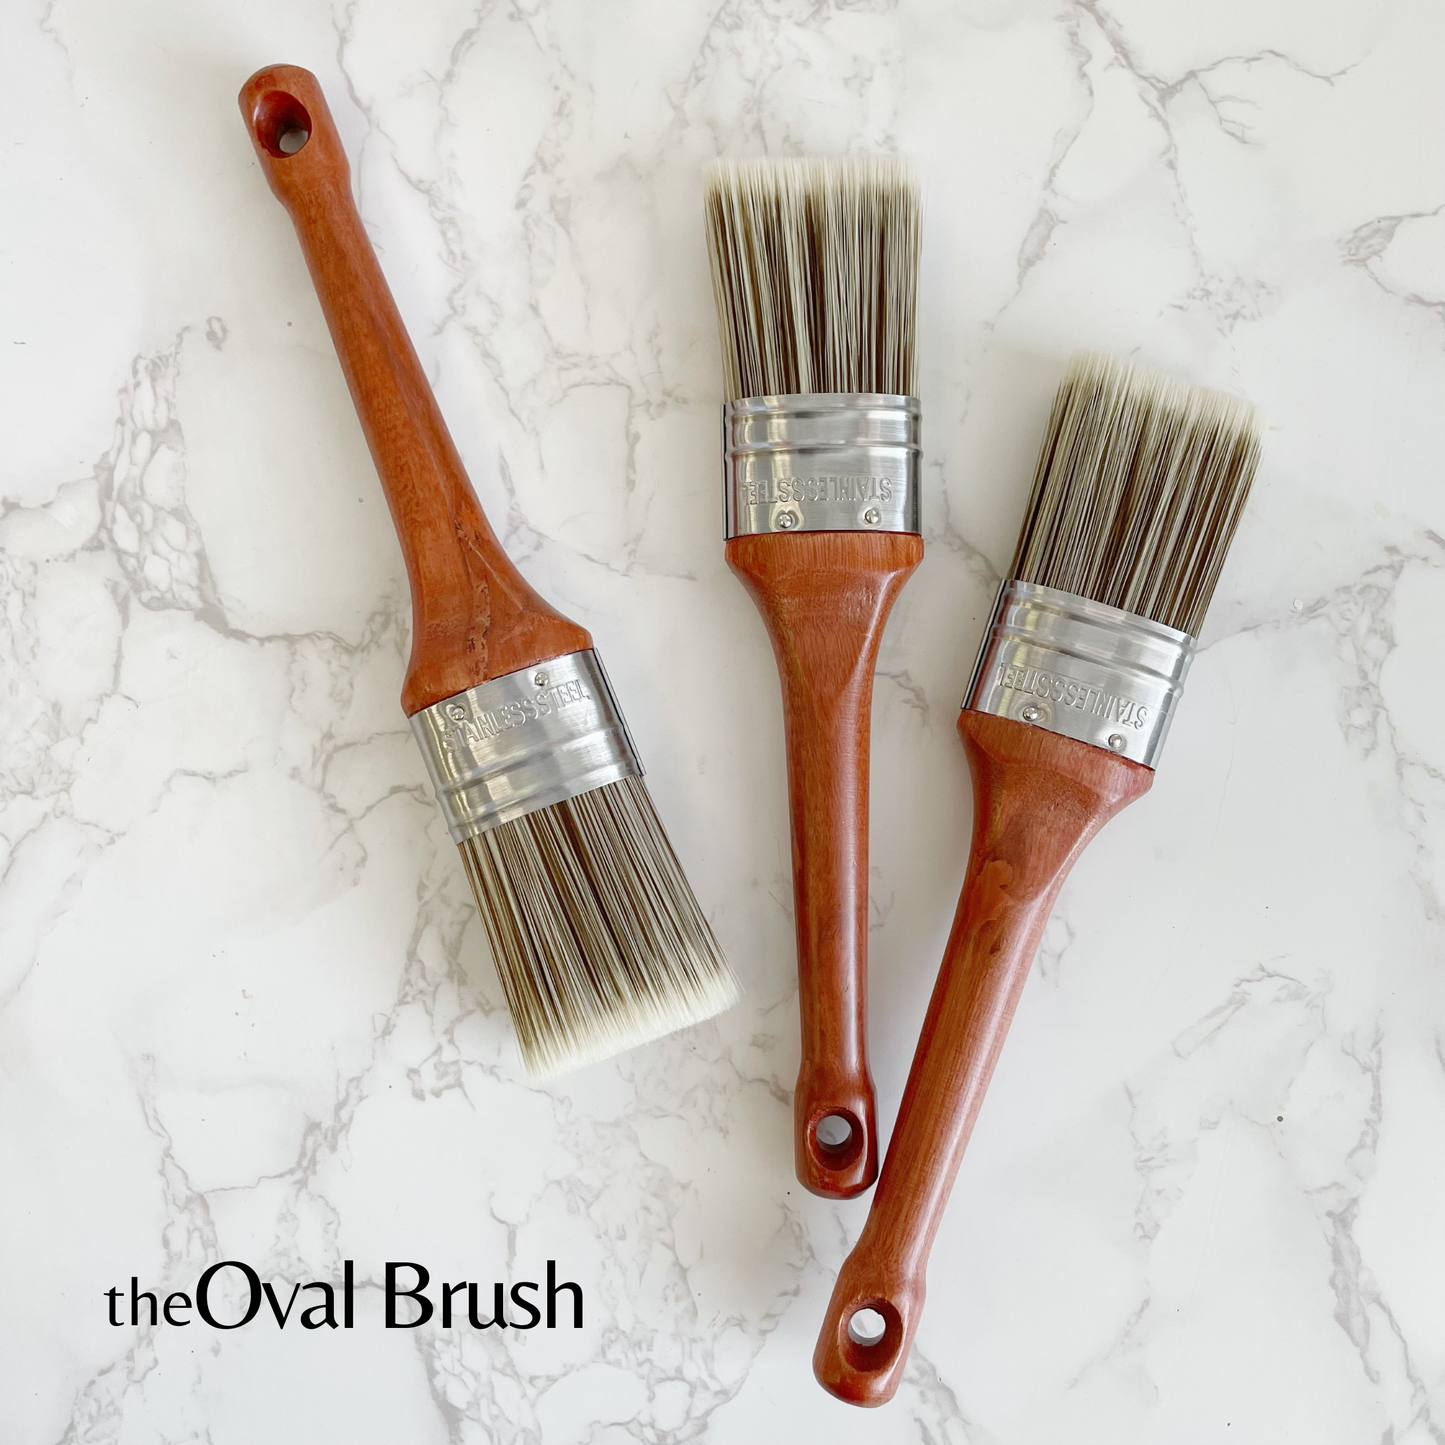 theOval Brush